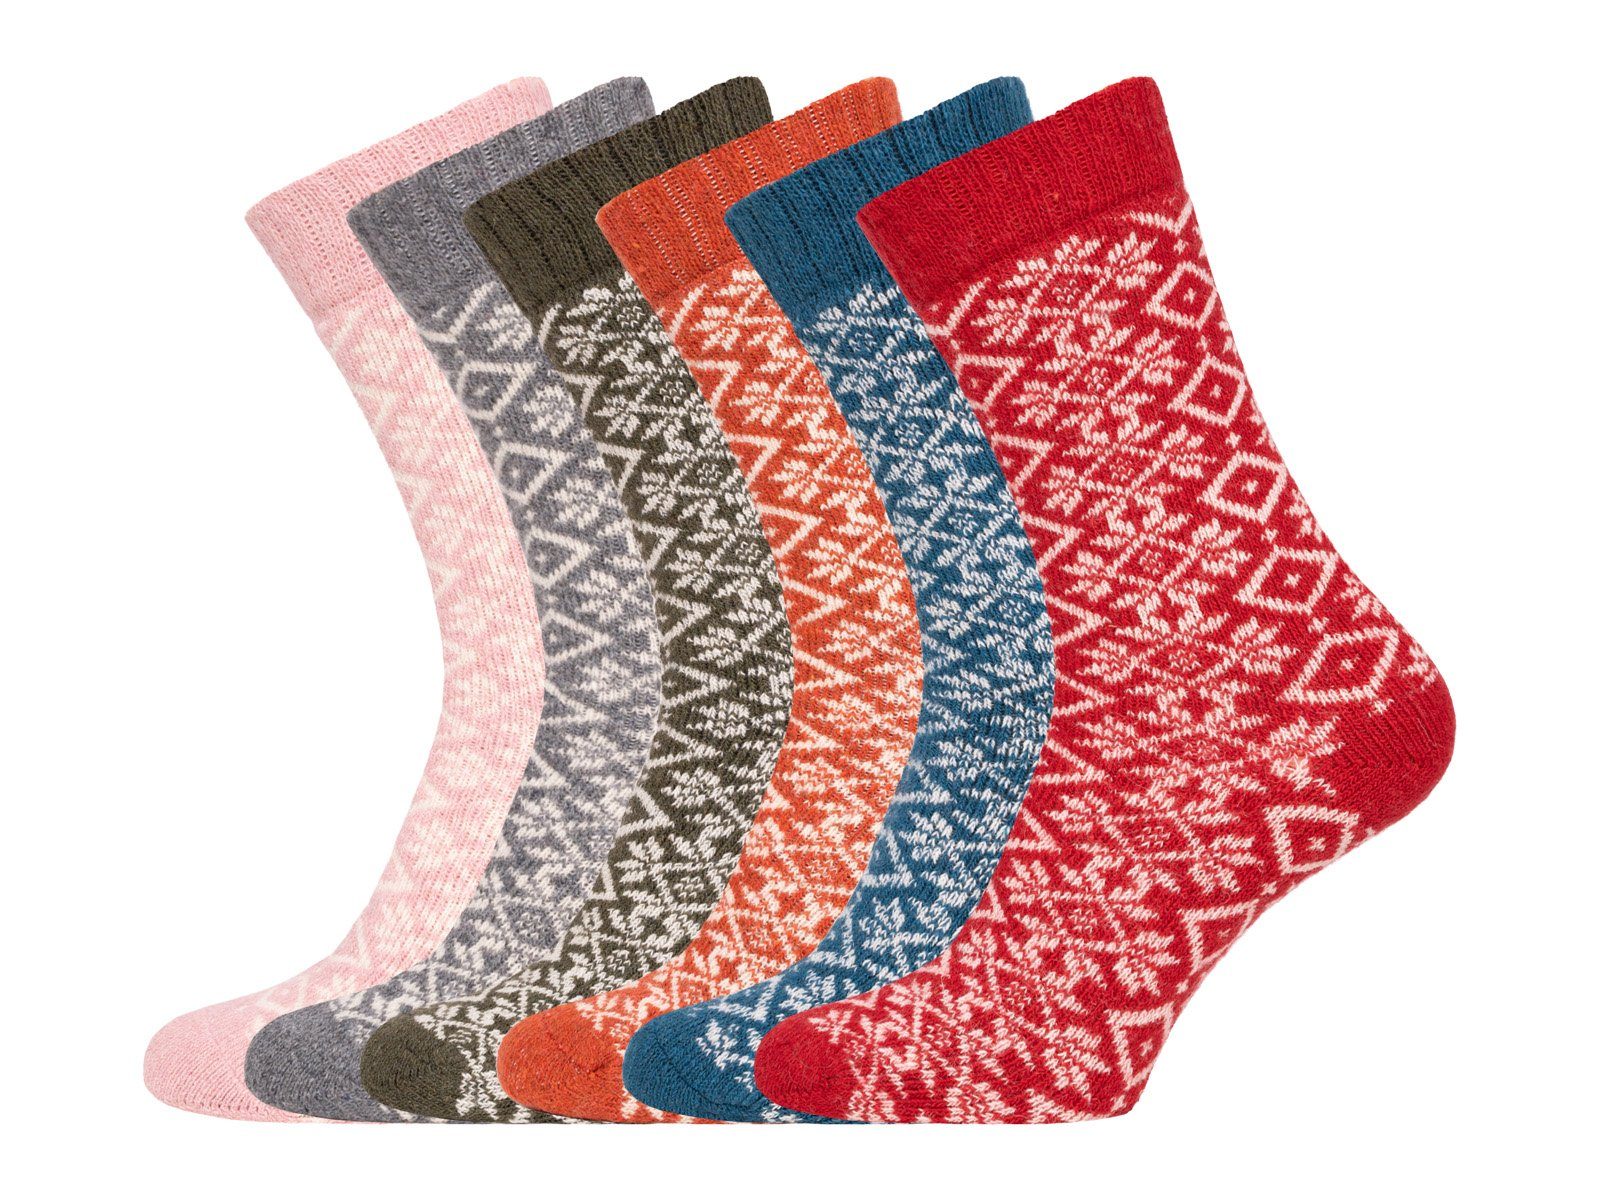 HomeOfSocks Socken Hygge Socken Dick Wollanteil Design Mit Herren Hohem Wolle 45% mit Warm Für Hyggelig Bunten Dicke & Damen In Socken Orange